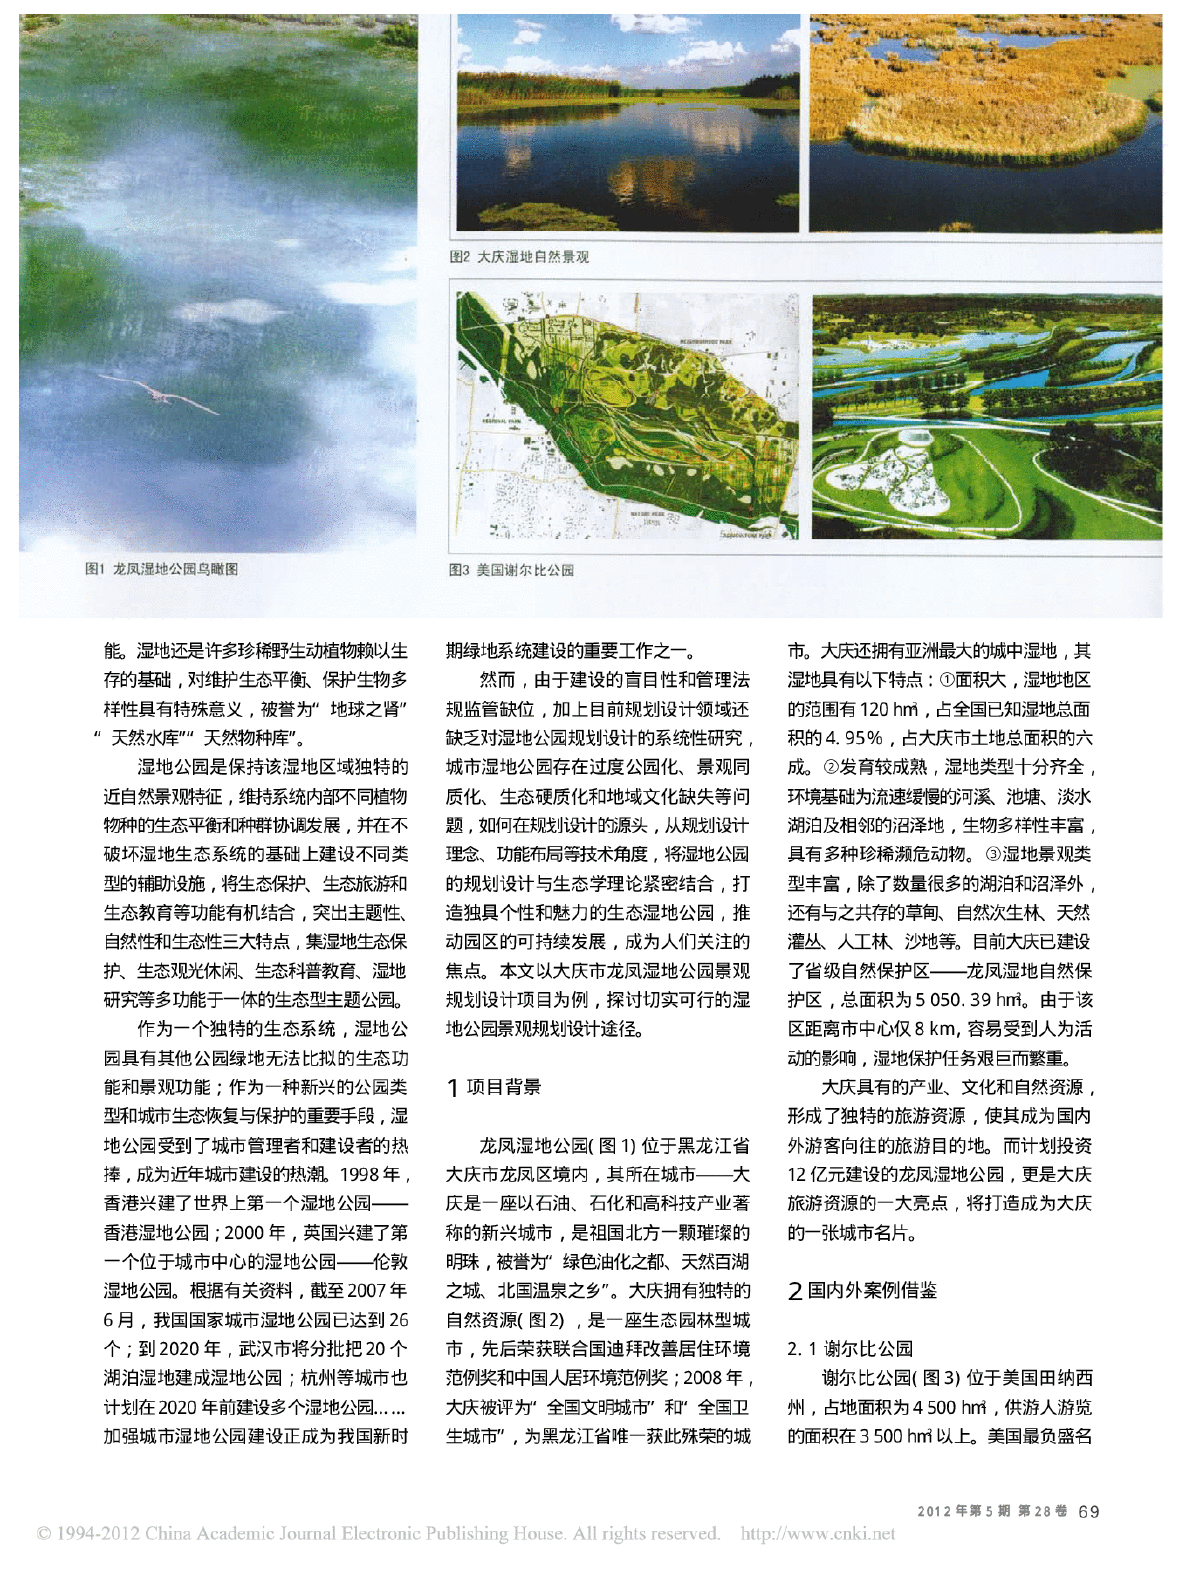 大庆市龙凤湿地公园景观规划设计探析-图二